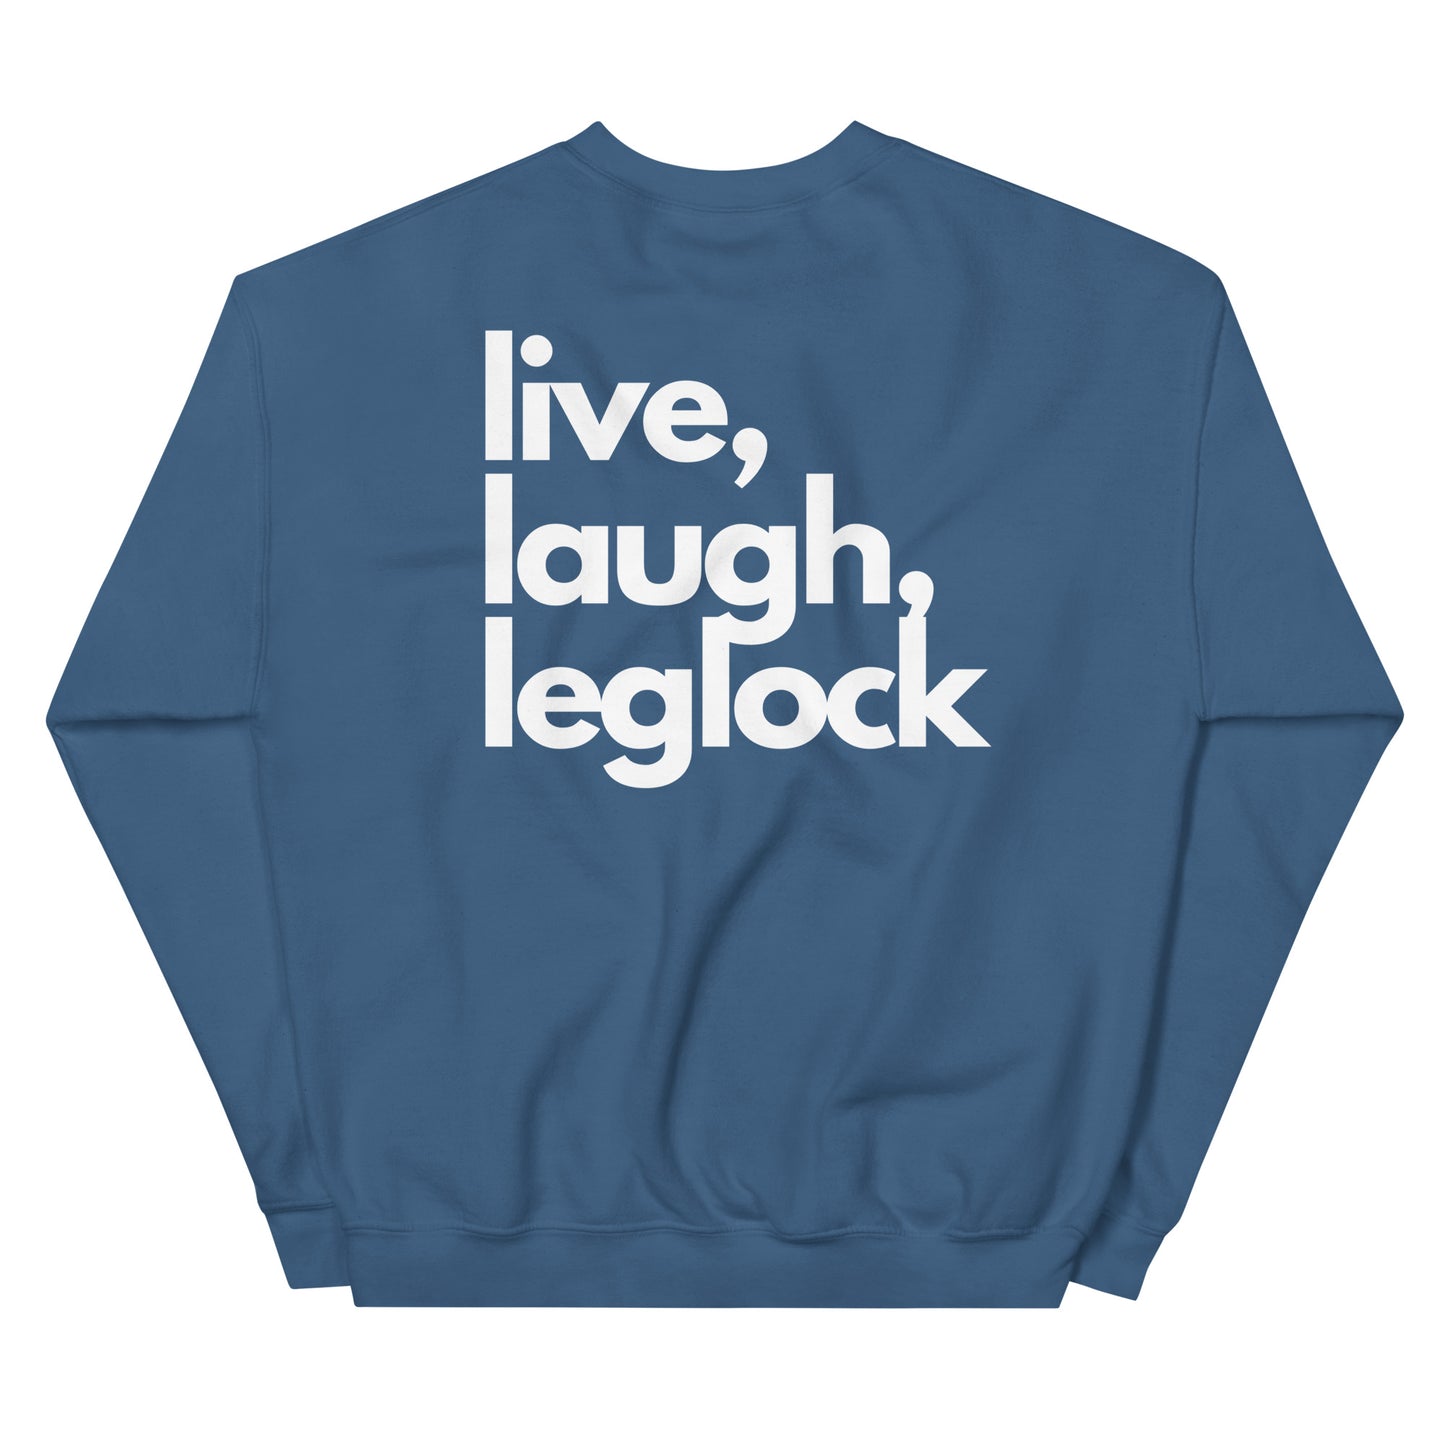 live, laugh, leglock - Jiu Jitsu Sweatshirt